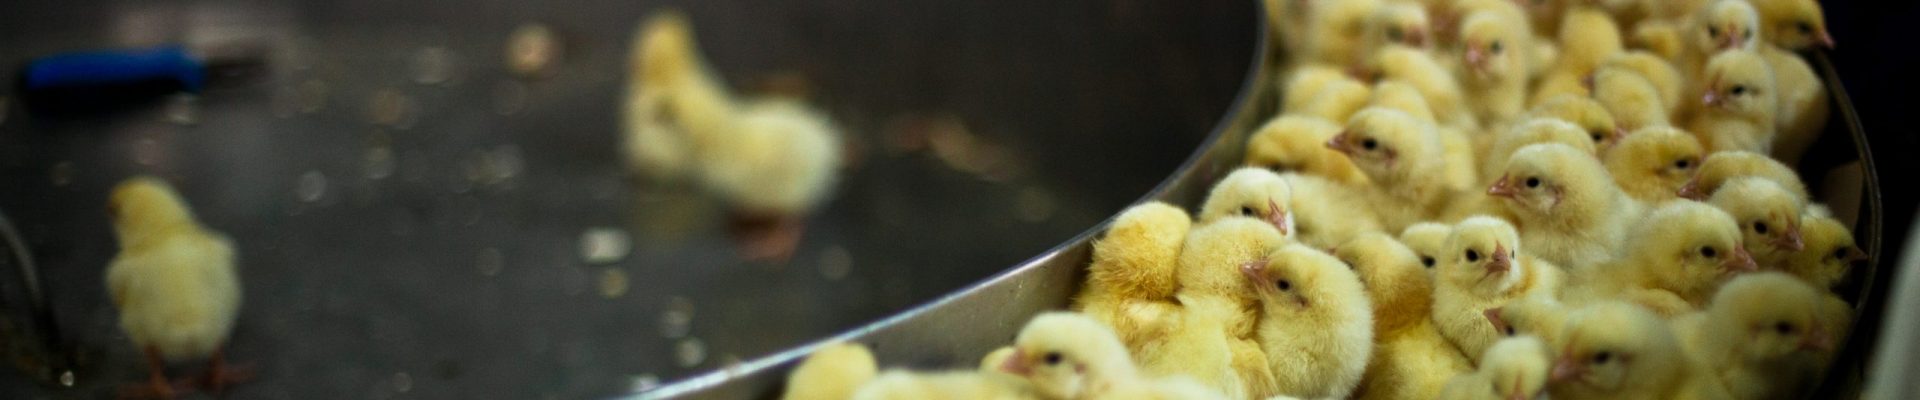 Tu știi ce se întâmplă cu puișorii masculi din industria ouălor?